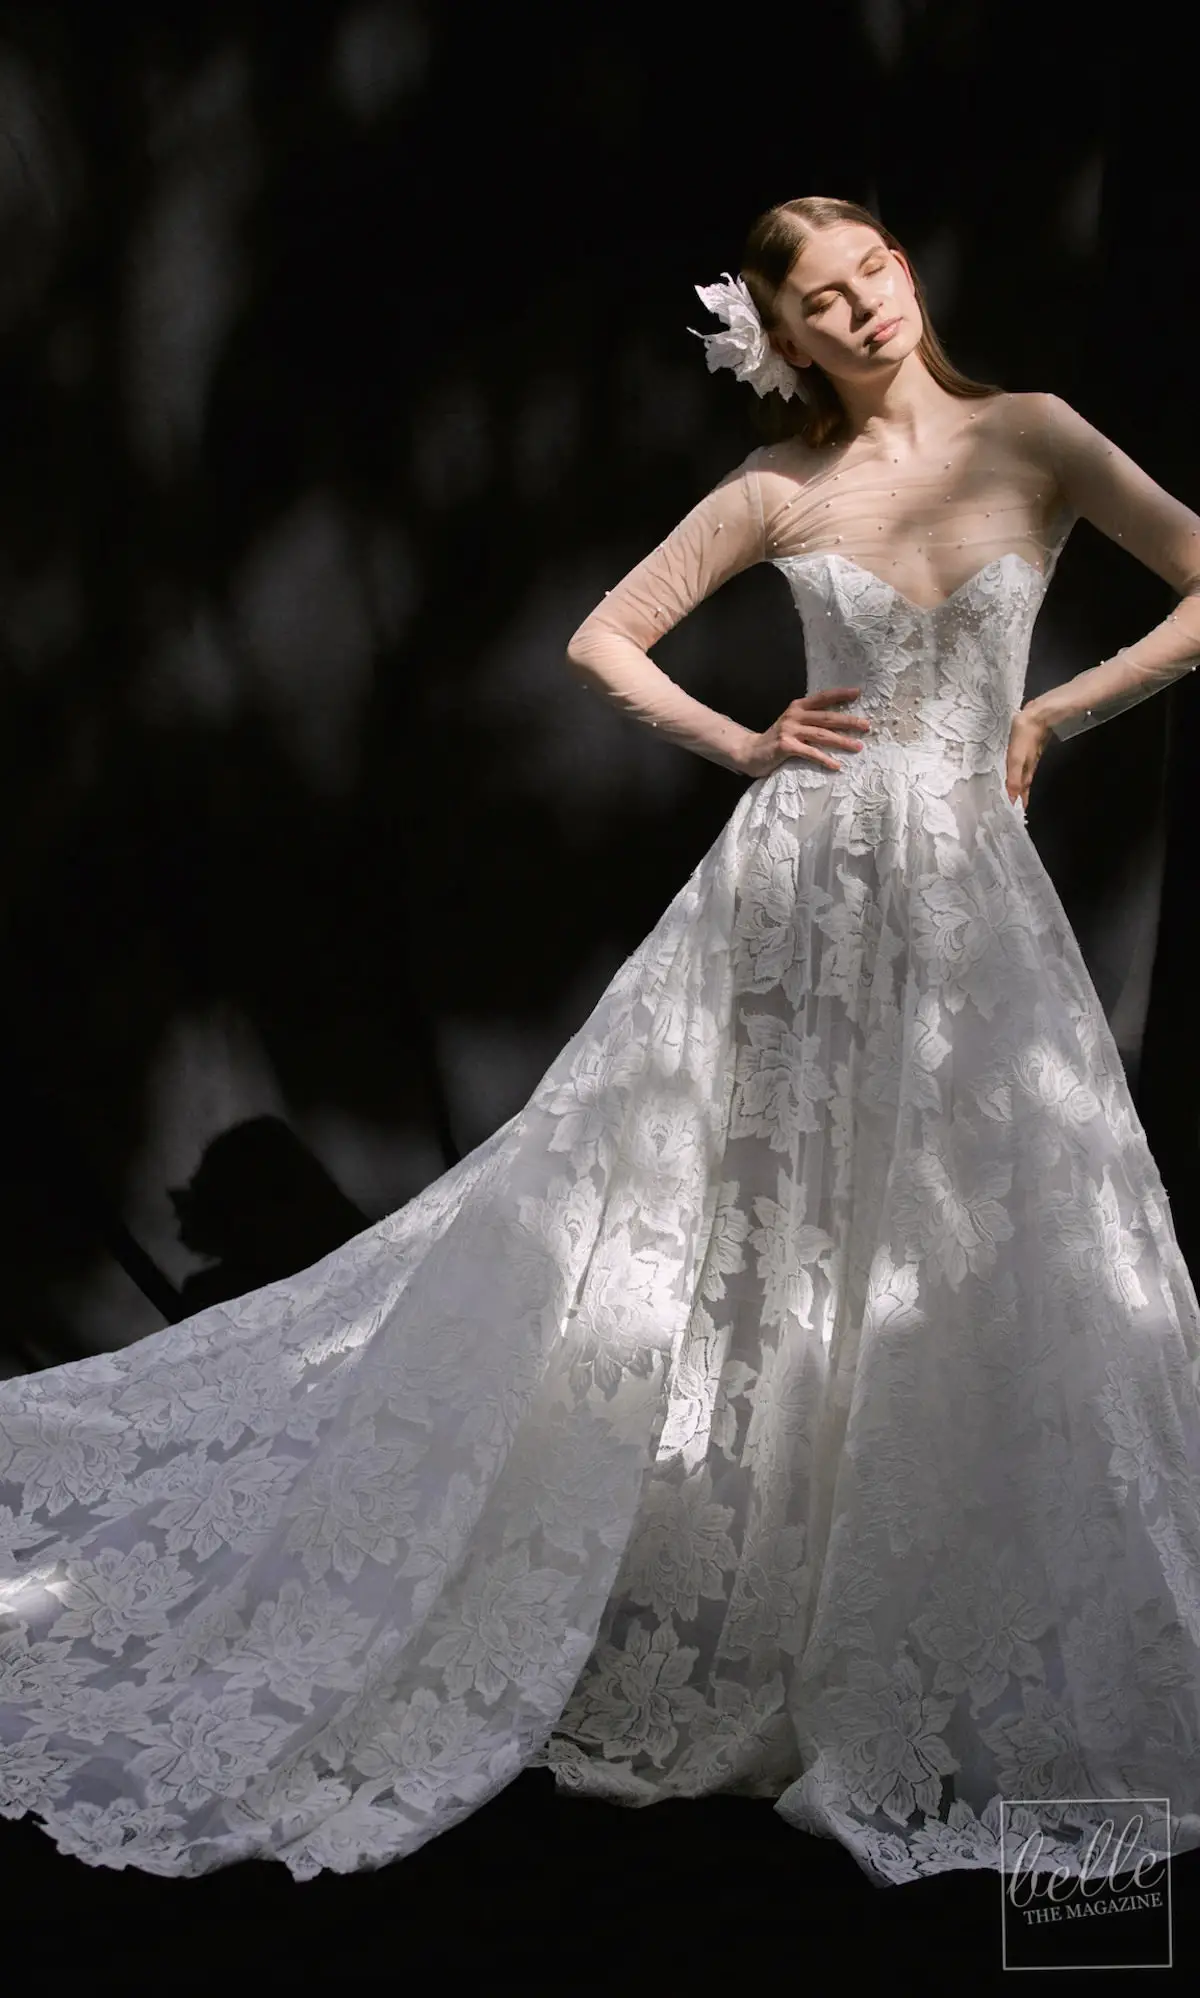 Wedding dress trends 2021 - Florals - FRANCESCA MIRANDA Teresa